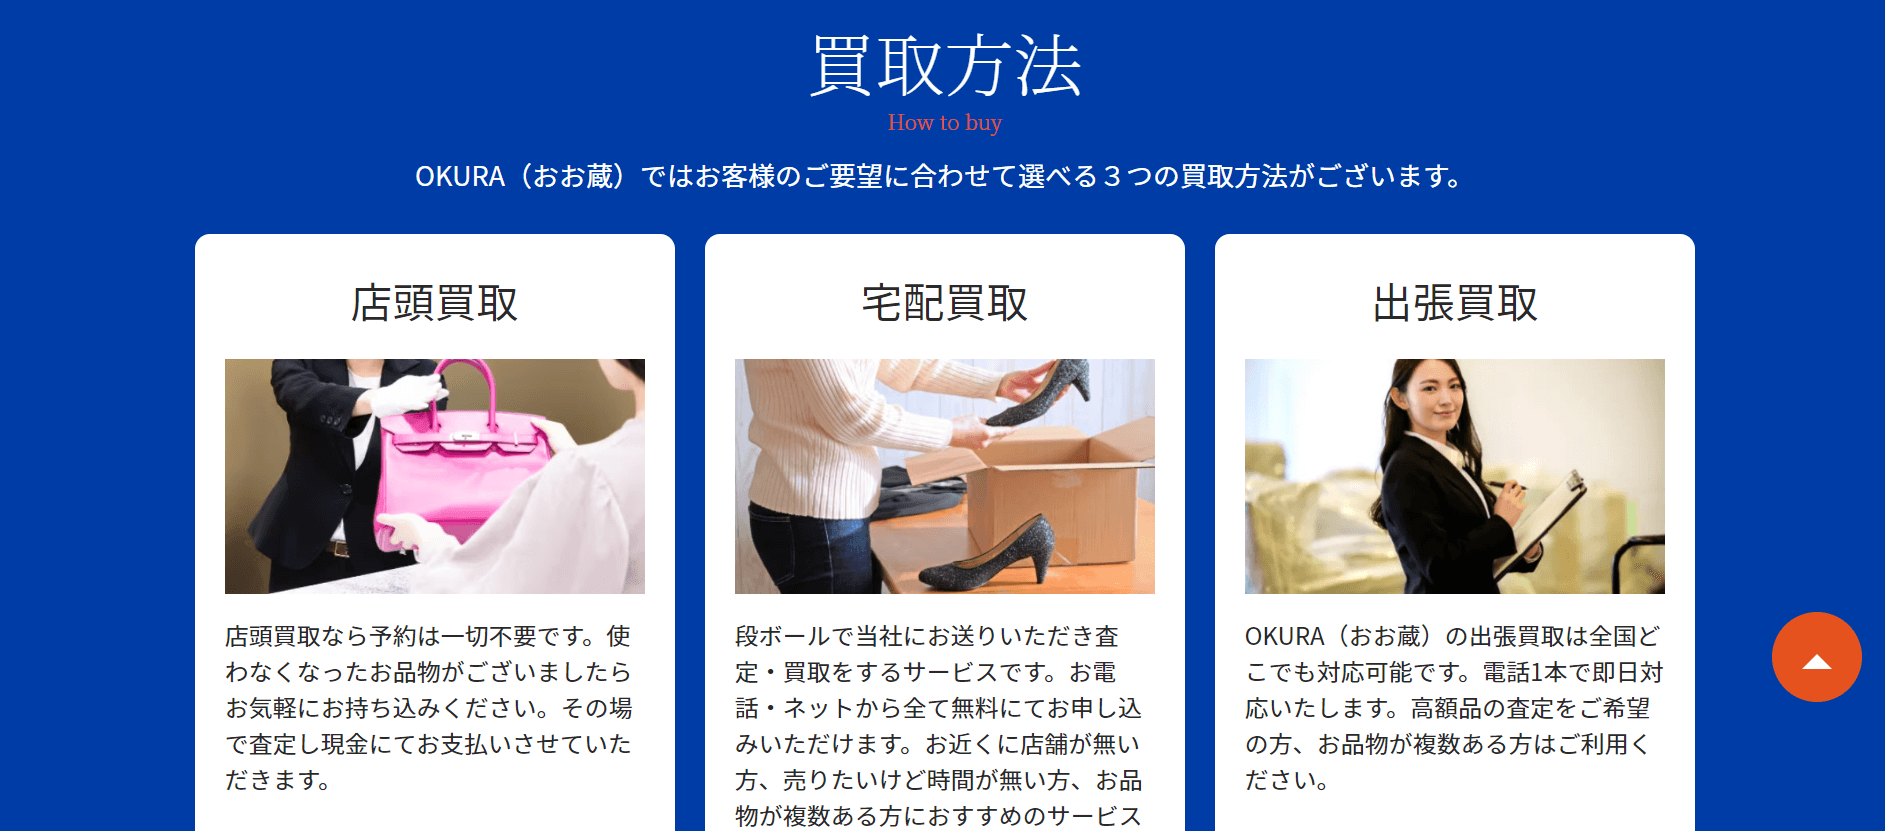 OKURA公式サイトのブランド買取のページ